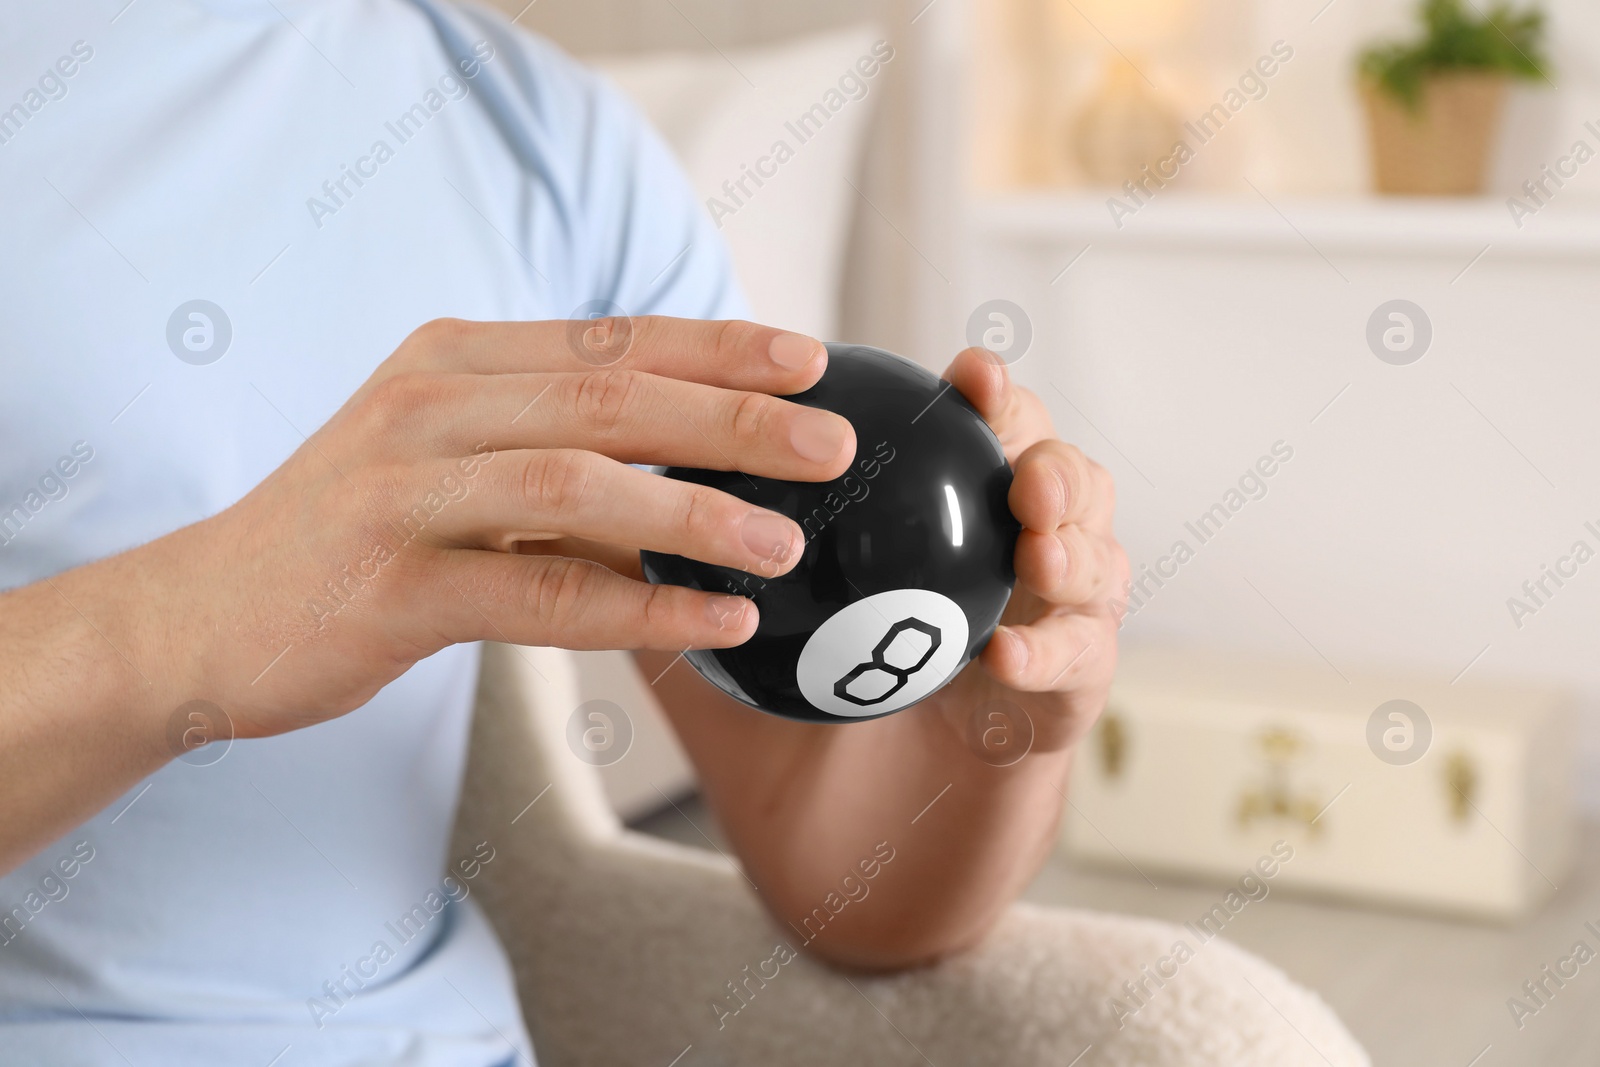 Photo of Man holding magic eight ball indoors, closeup